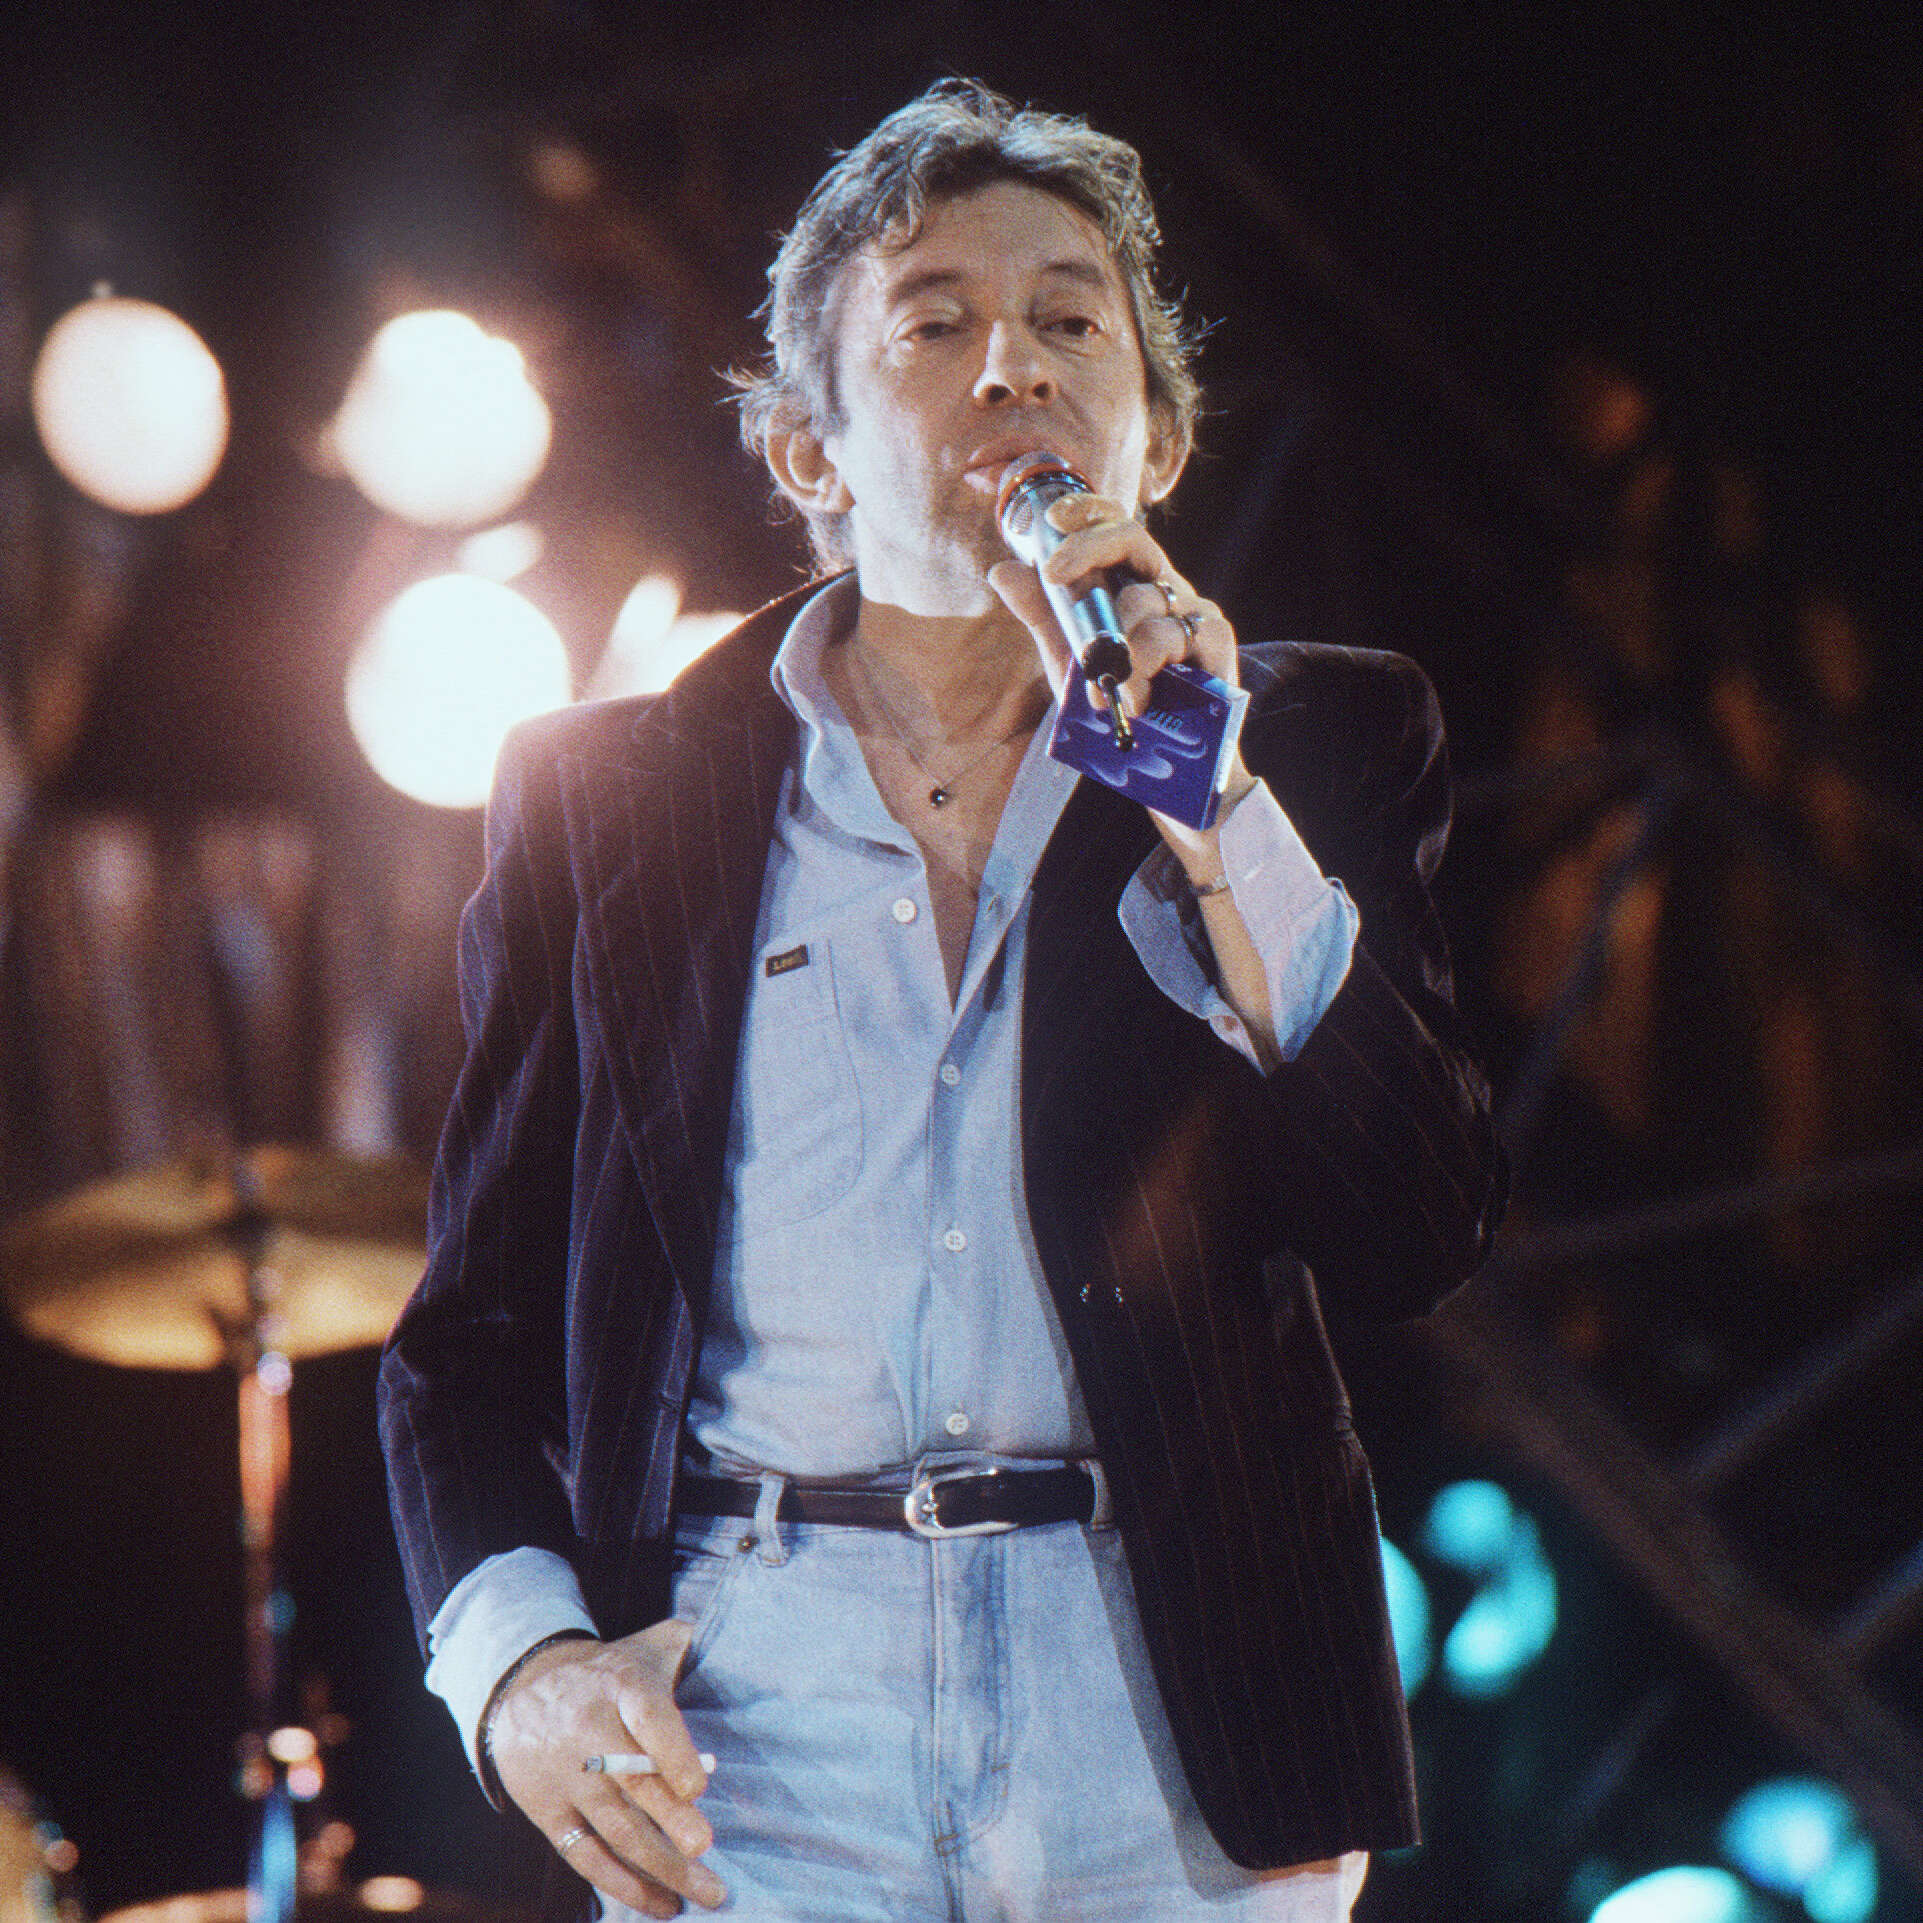 Le chanteur français Serge Gainsbourg chante lors du premier anniversaire de la chaine de télévision Canal Plus, le 04 Novembre 1985 à Paris. Lucien Ginsburg, né le 02 avril 1928 à Paris, connu sous le nom de Serge Gainsbourg, est chanteur, musicien, compositeur, poète, écrivain, acteur, réalisateur et peintre. (Photo by PASCAL GEORGE / AFP)